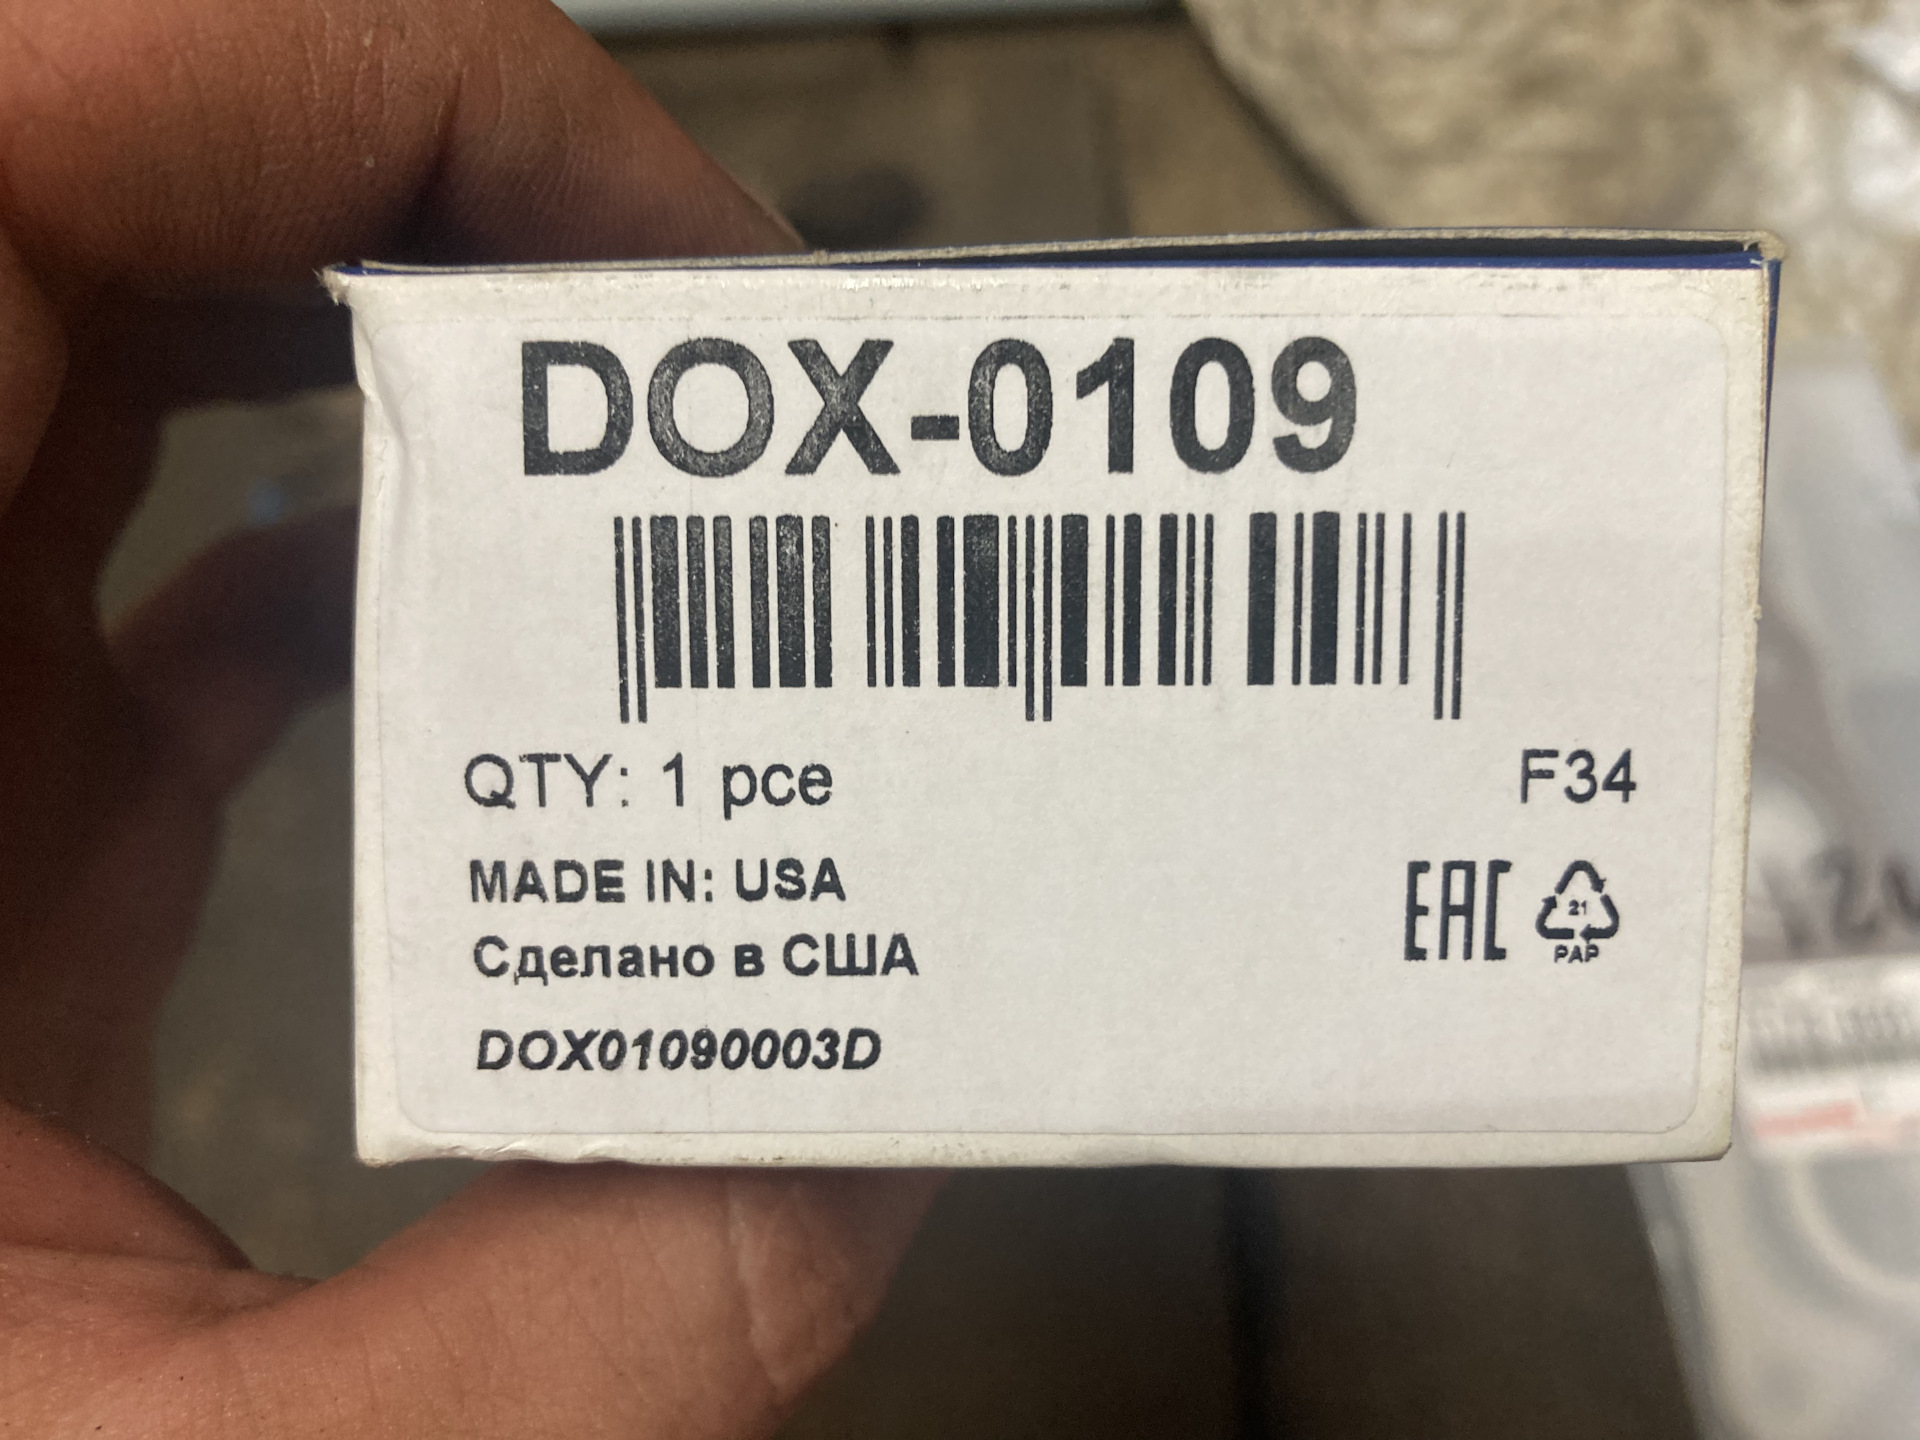 Dox-0109. Error code 28